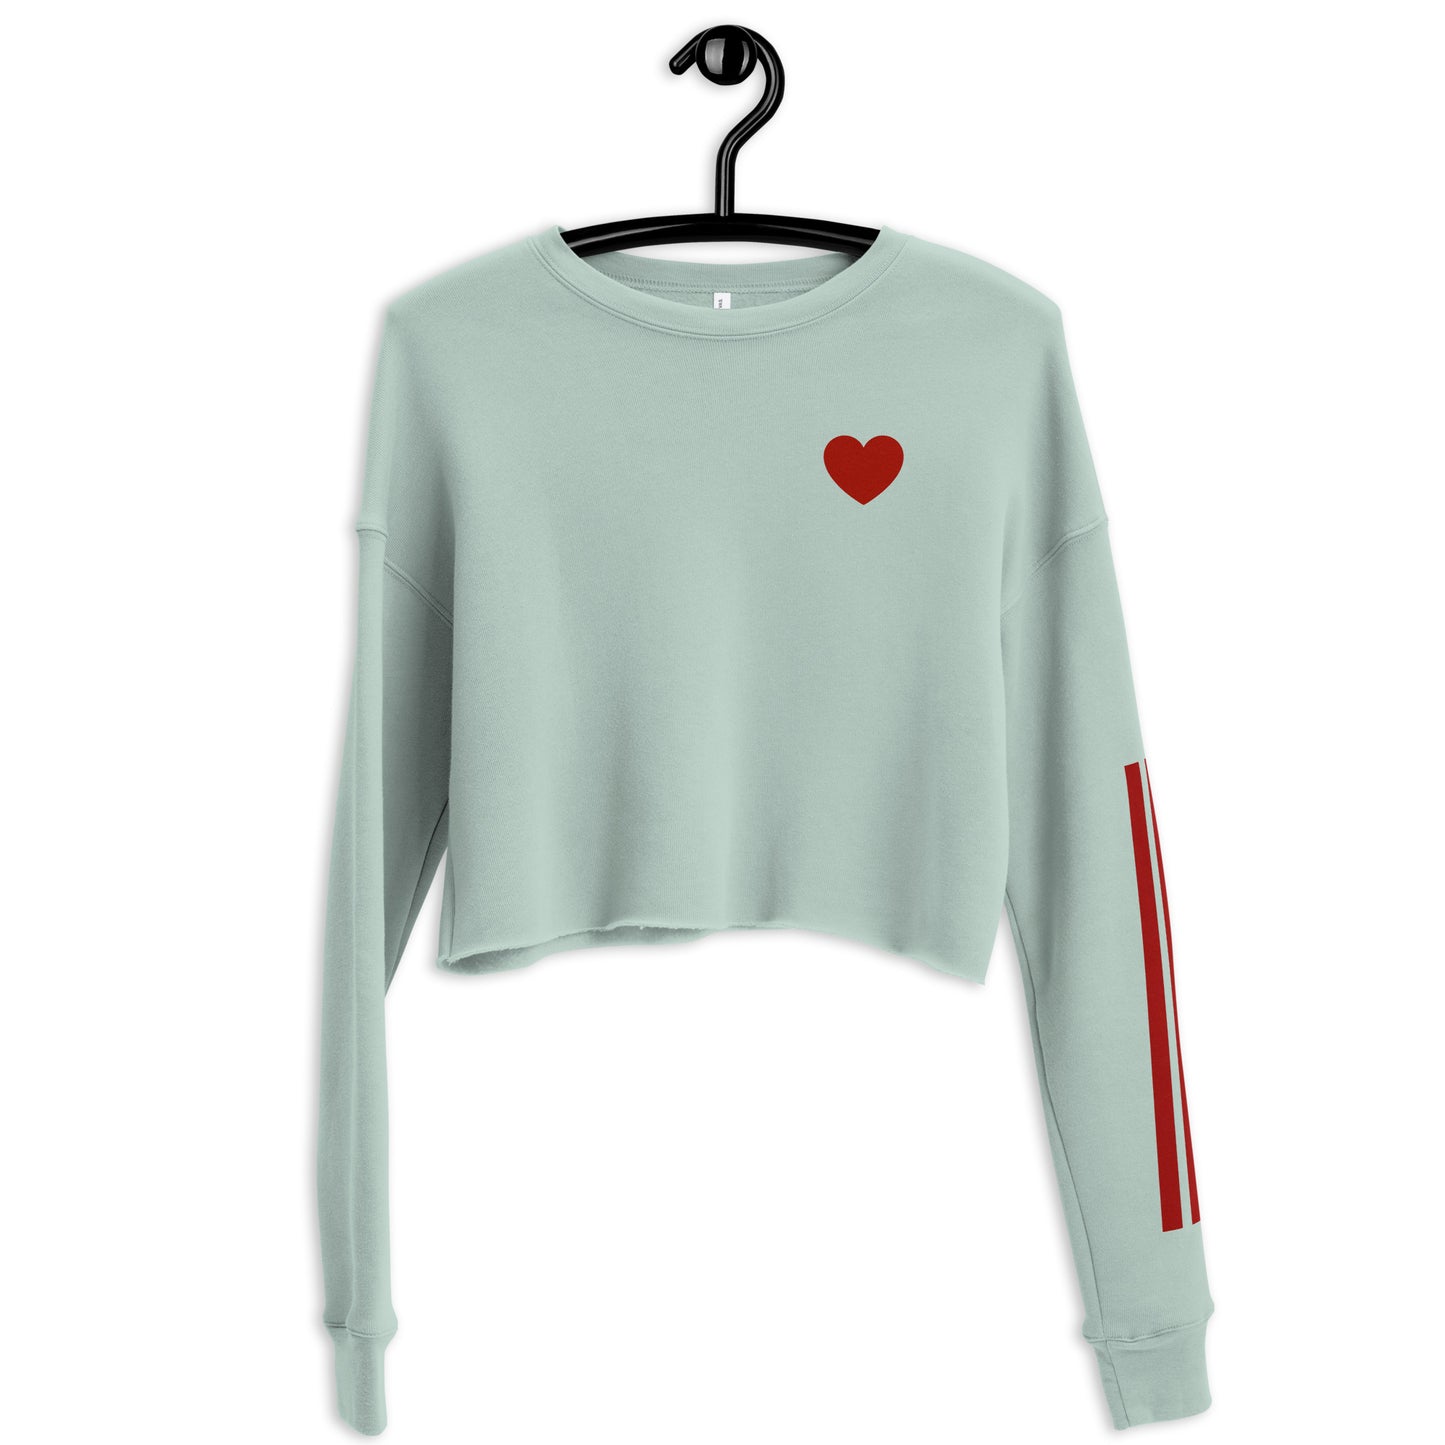 Snooty Fox Art Crop Sweatshirt - Heart